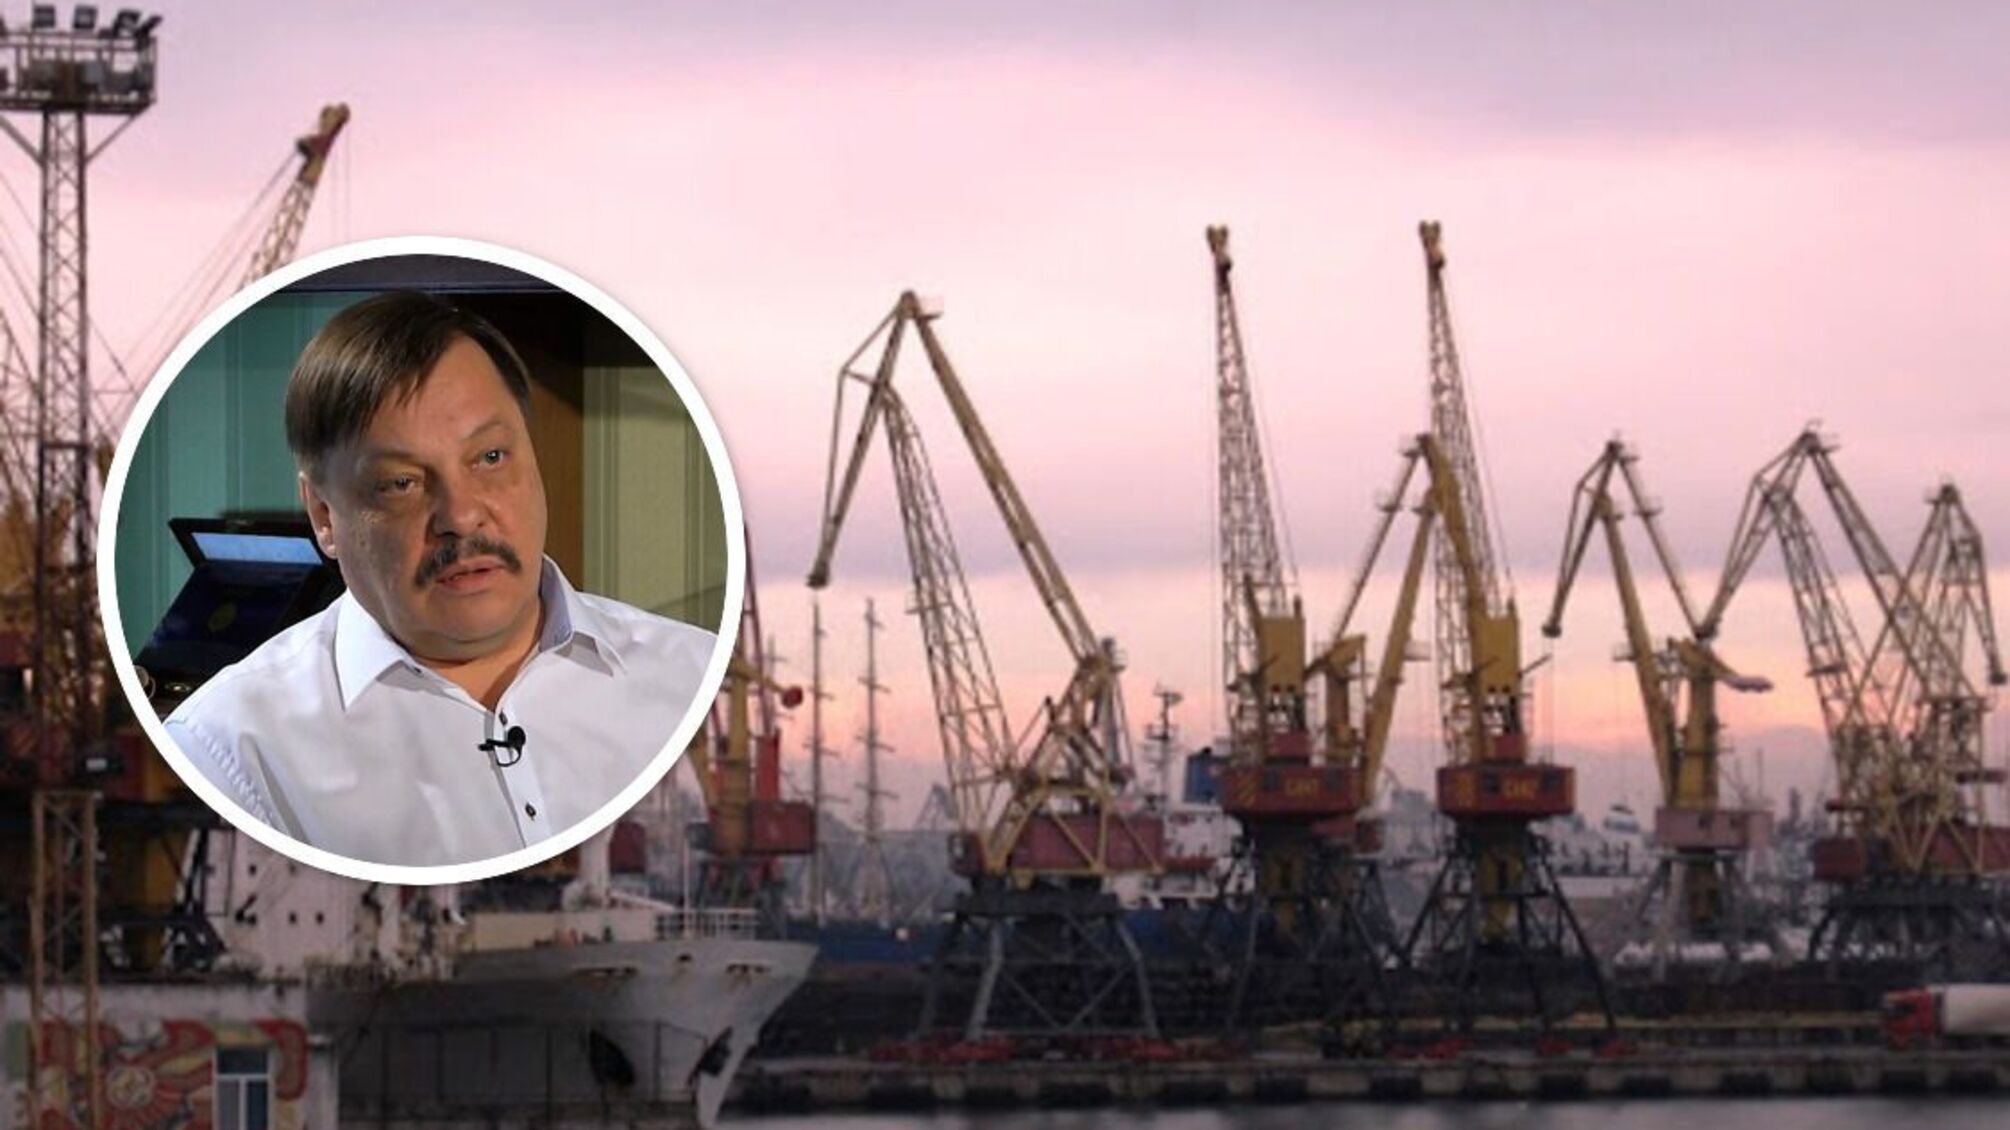 'Російський слід' в українському судноплавстві: що відбувається з портом 'Усть-Дунайськ'?